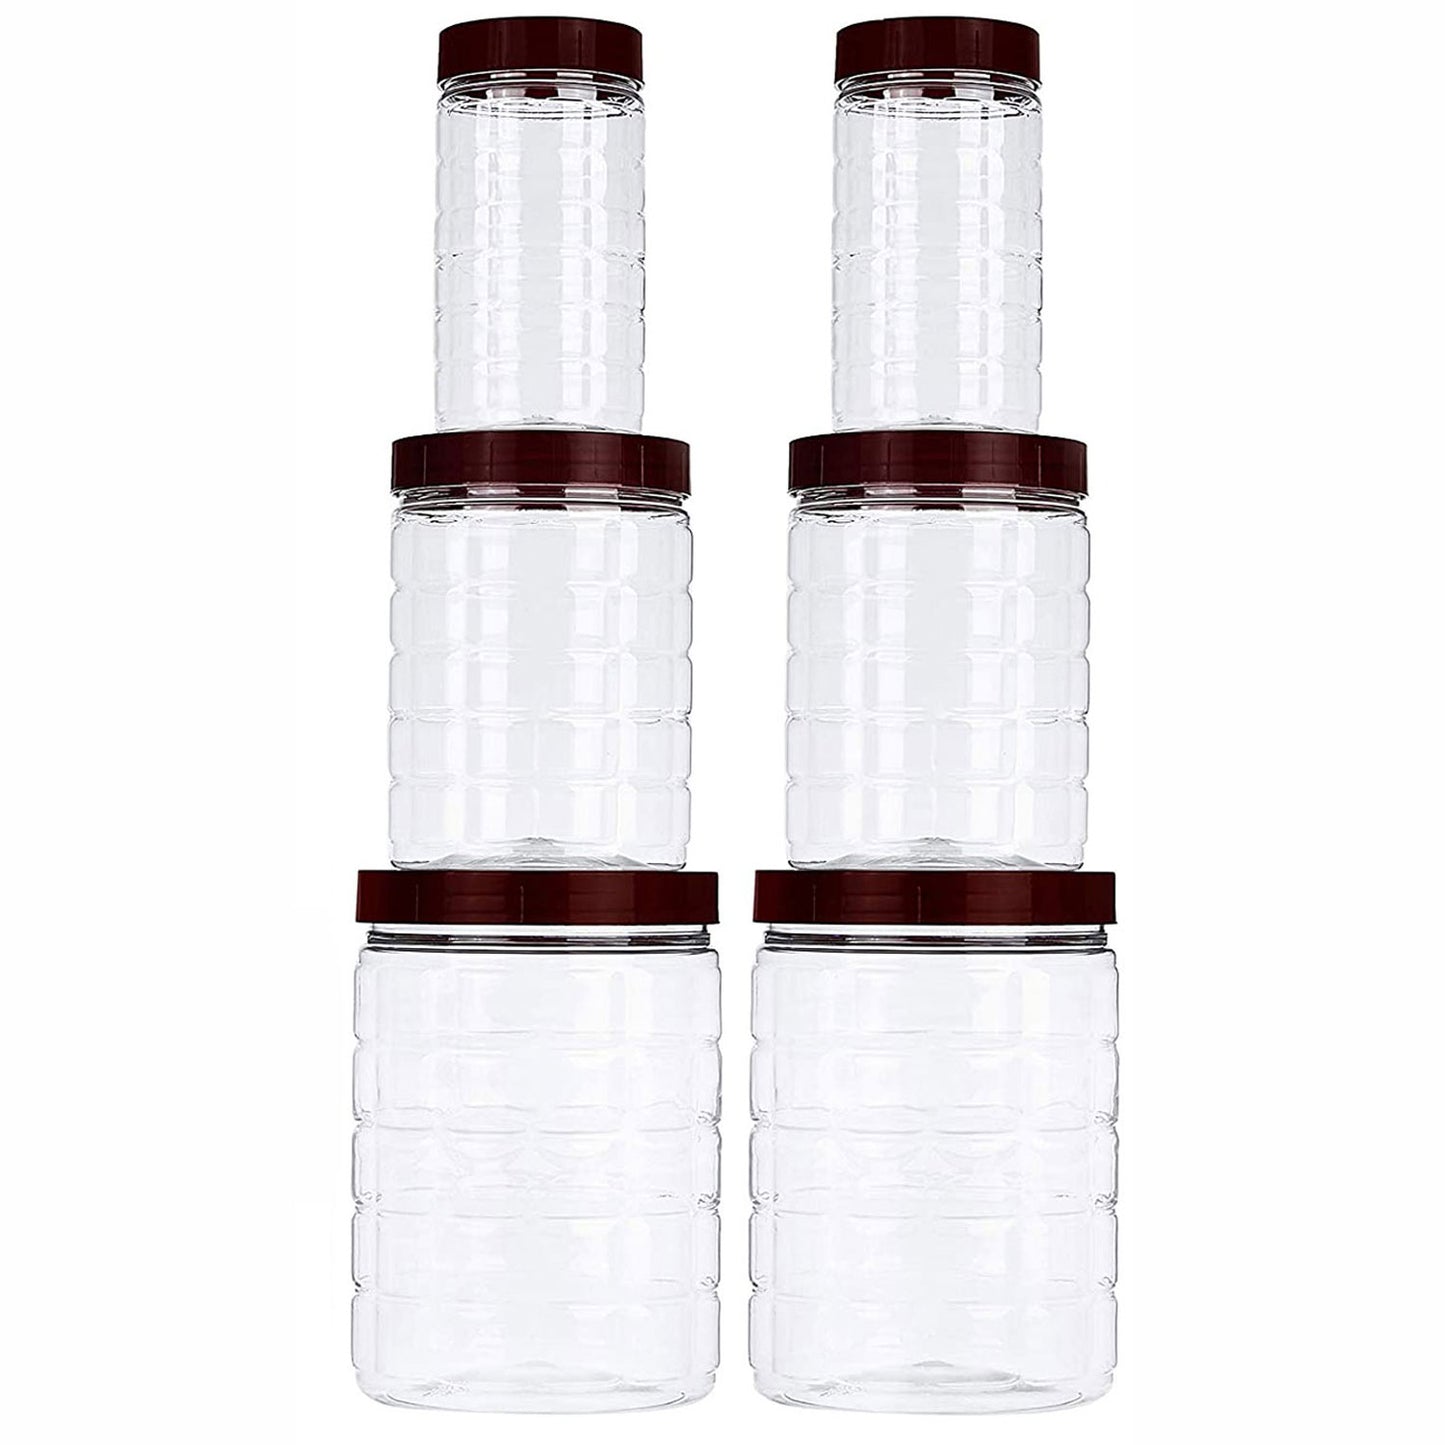 Plastic Jar Container Set of 6